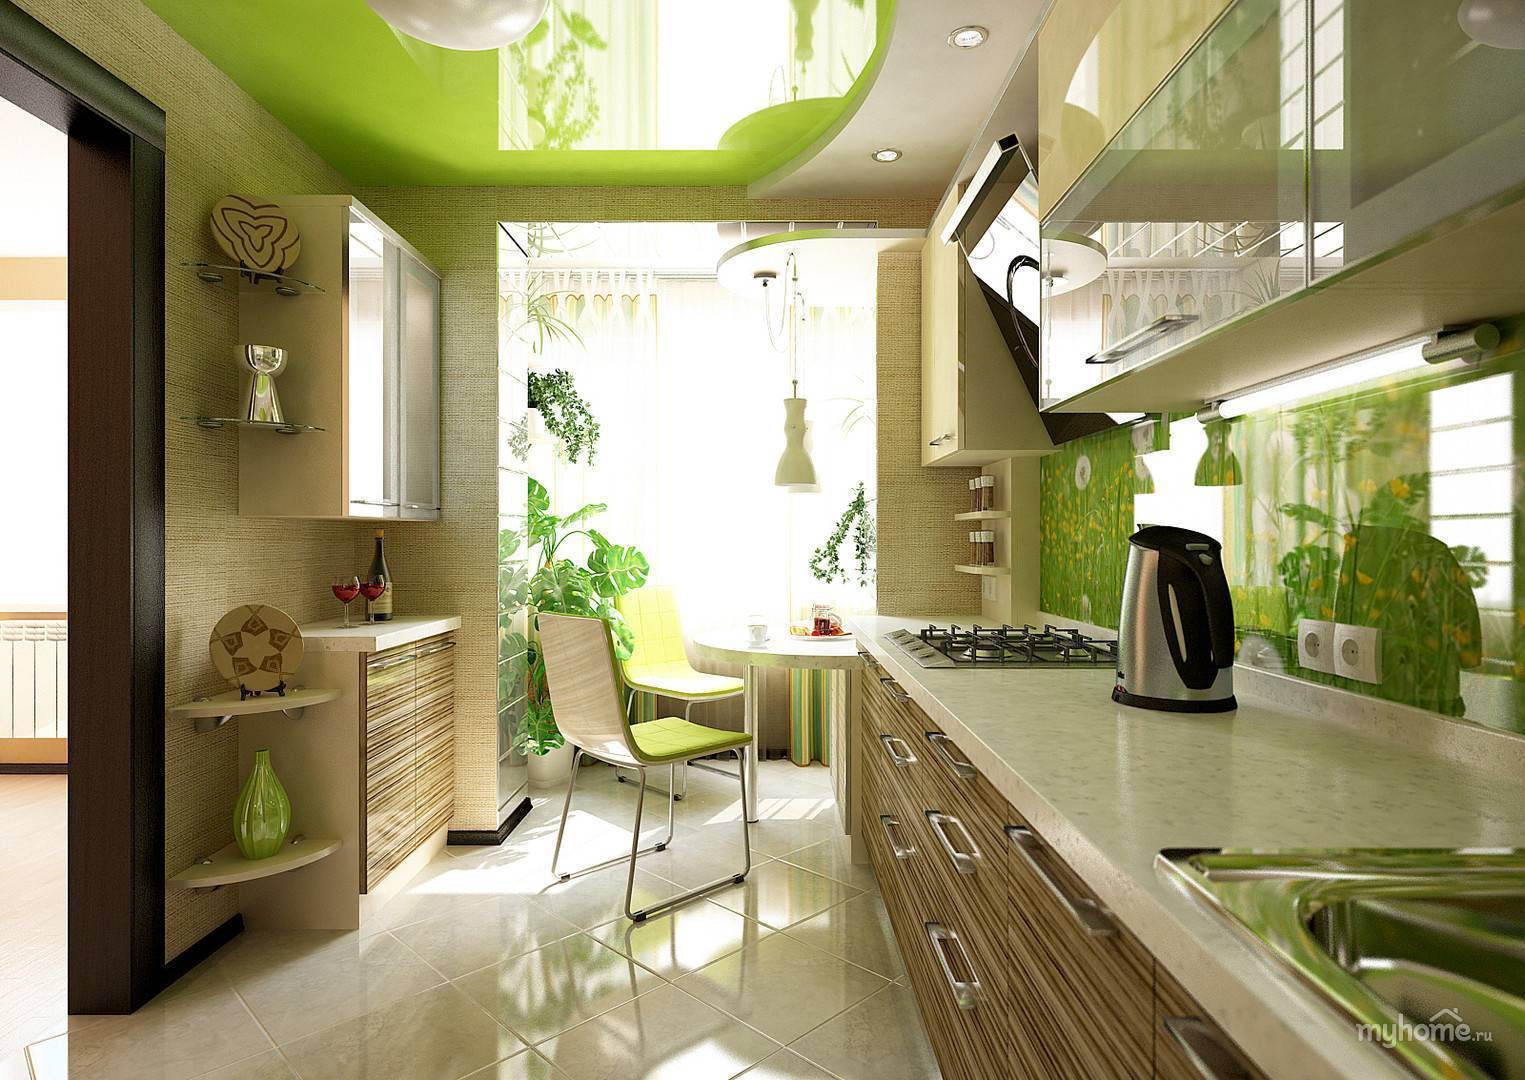 Дизайн желто-зеленой кухни: сочетание цвета, реальные фото